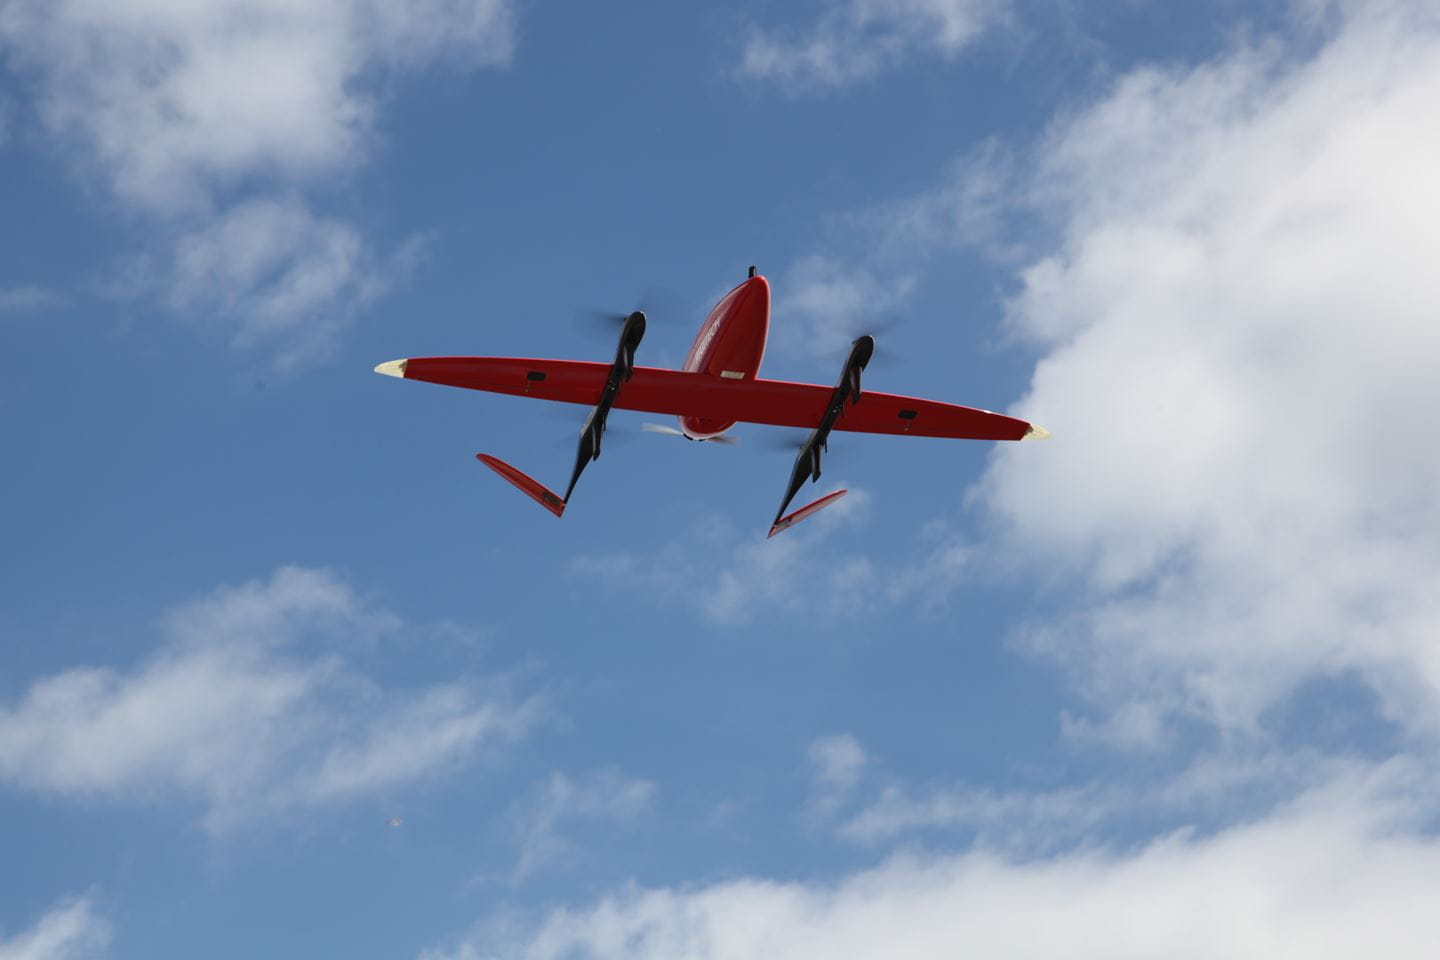 samling nyhed skotsk Ørsted og DSV tester fragtdroner ved Anholt Havmøllepark